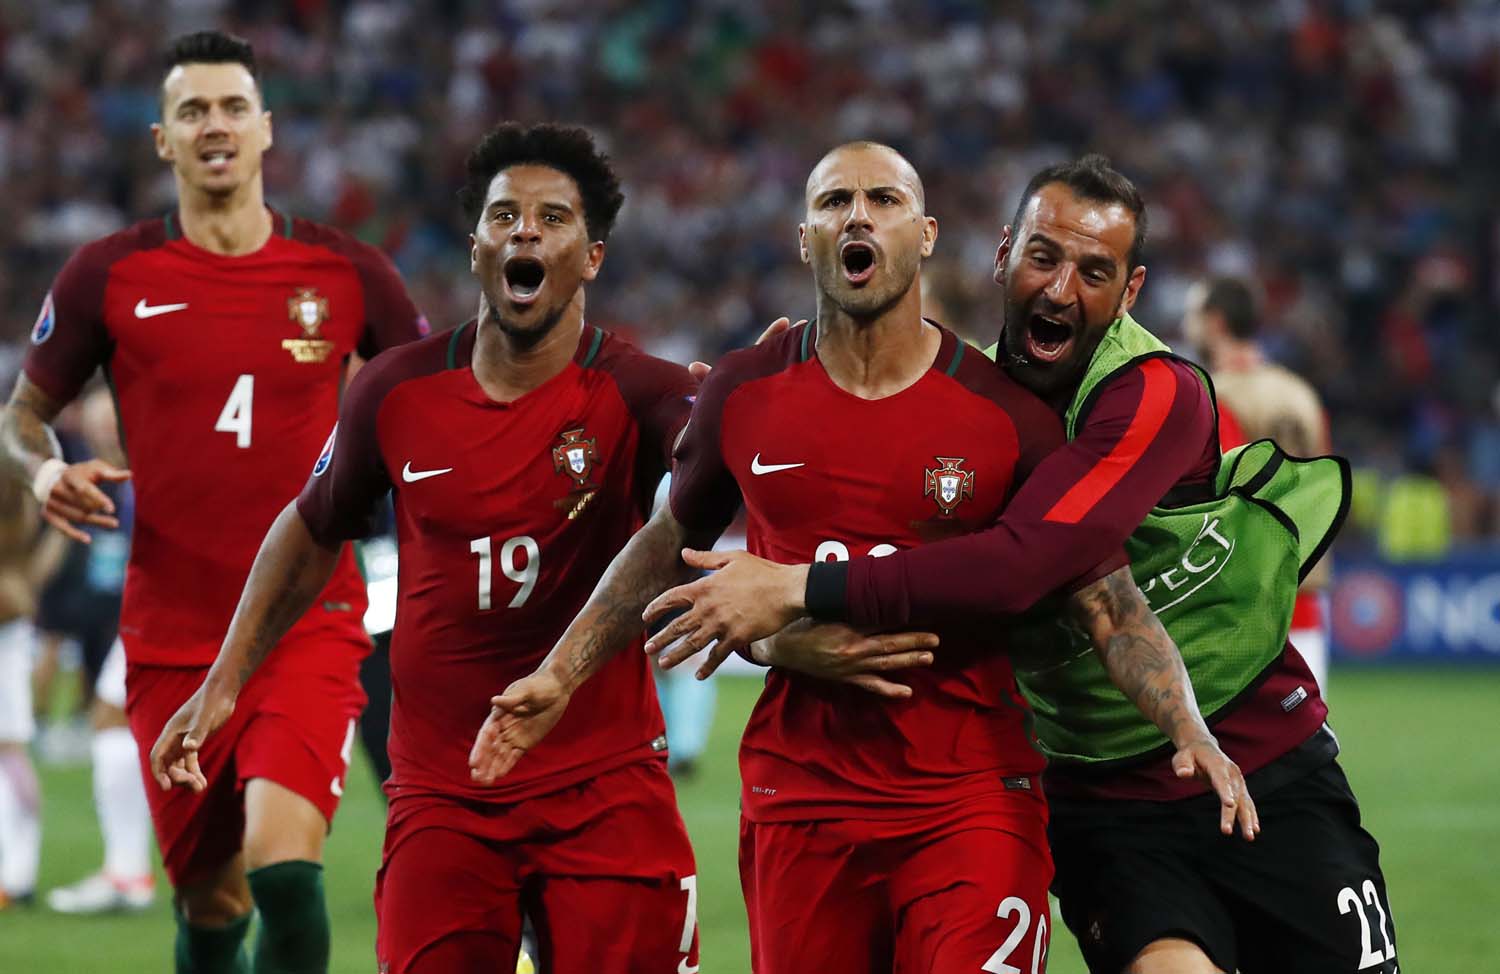 Portugal entra en semifinales tras vencer en penales a Polonia (+Fotos)